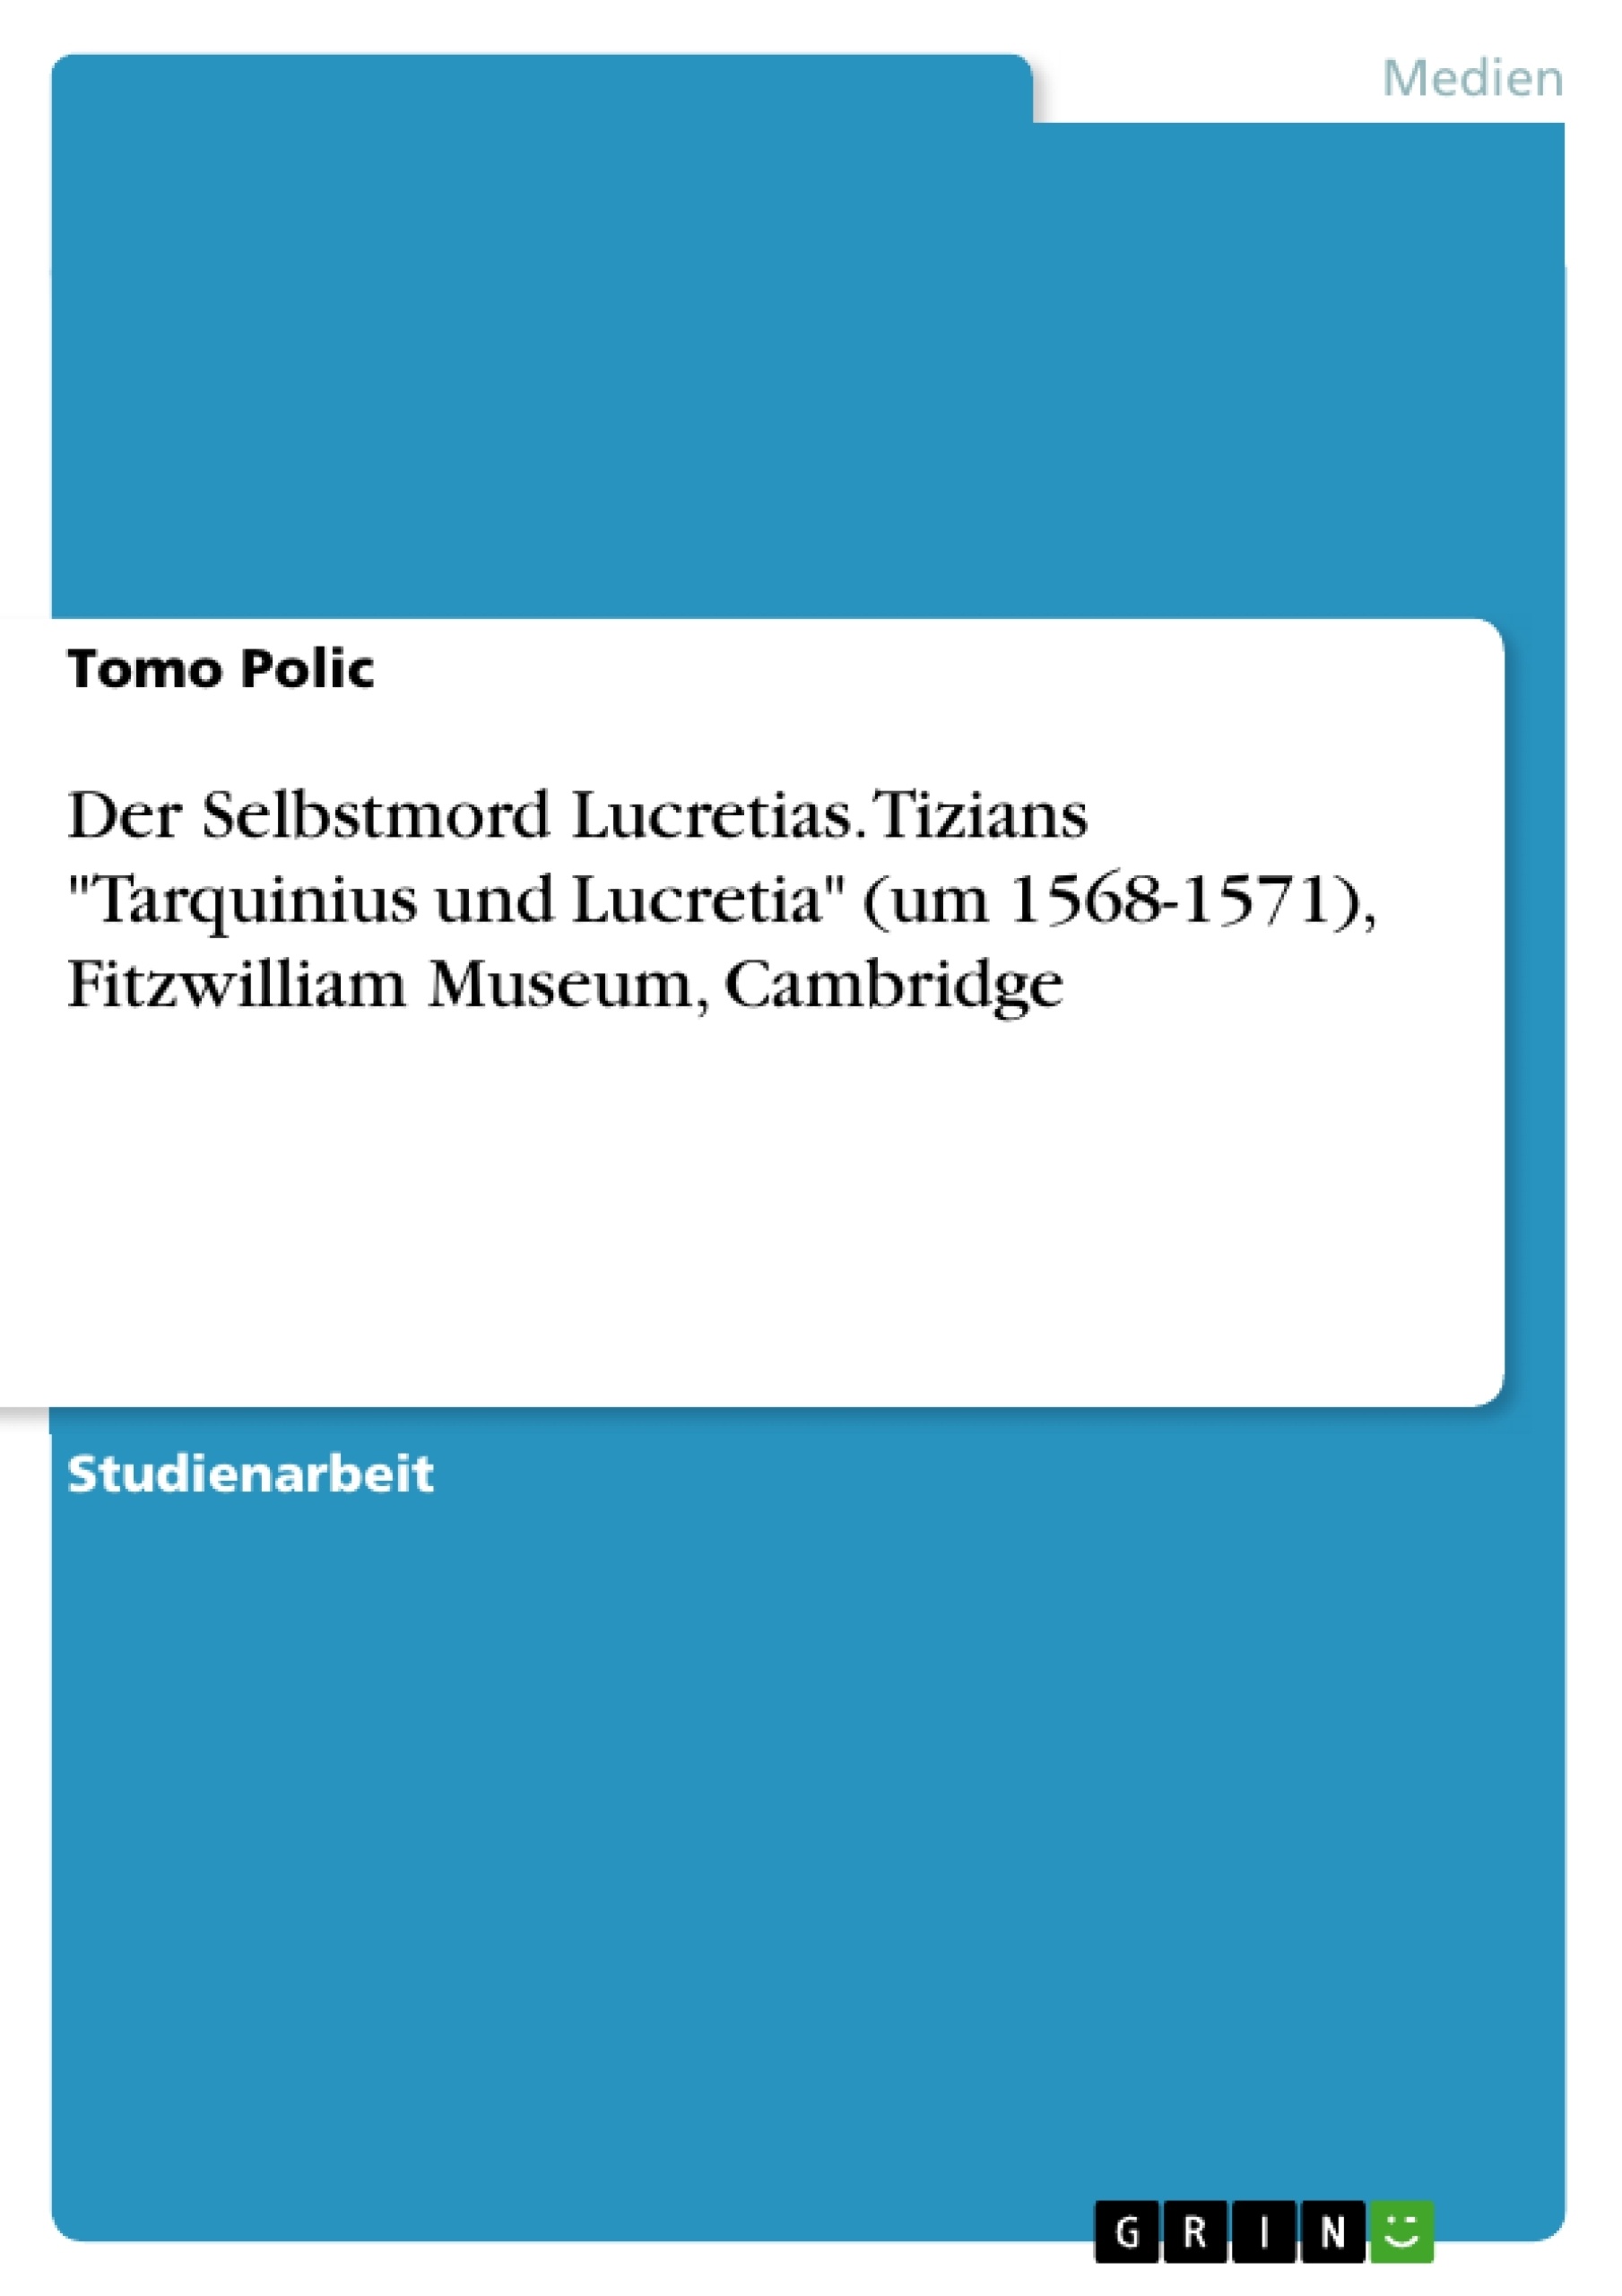 Título: Der Selbstmord Lucretias. Tizians "Tarquinius und Lucretia" (um 1568-1571), Fitzwilliam Museum, Cambridge